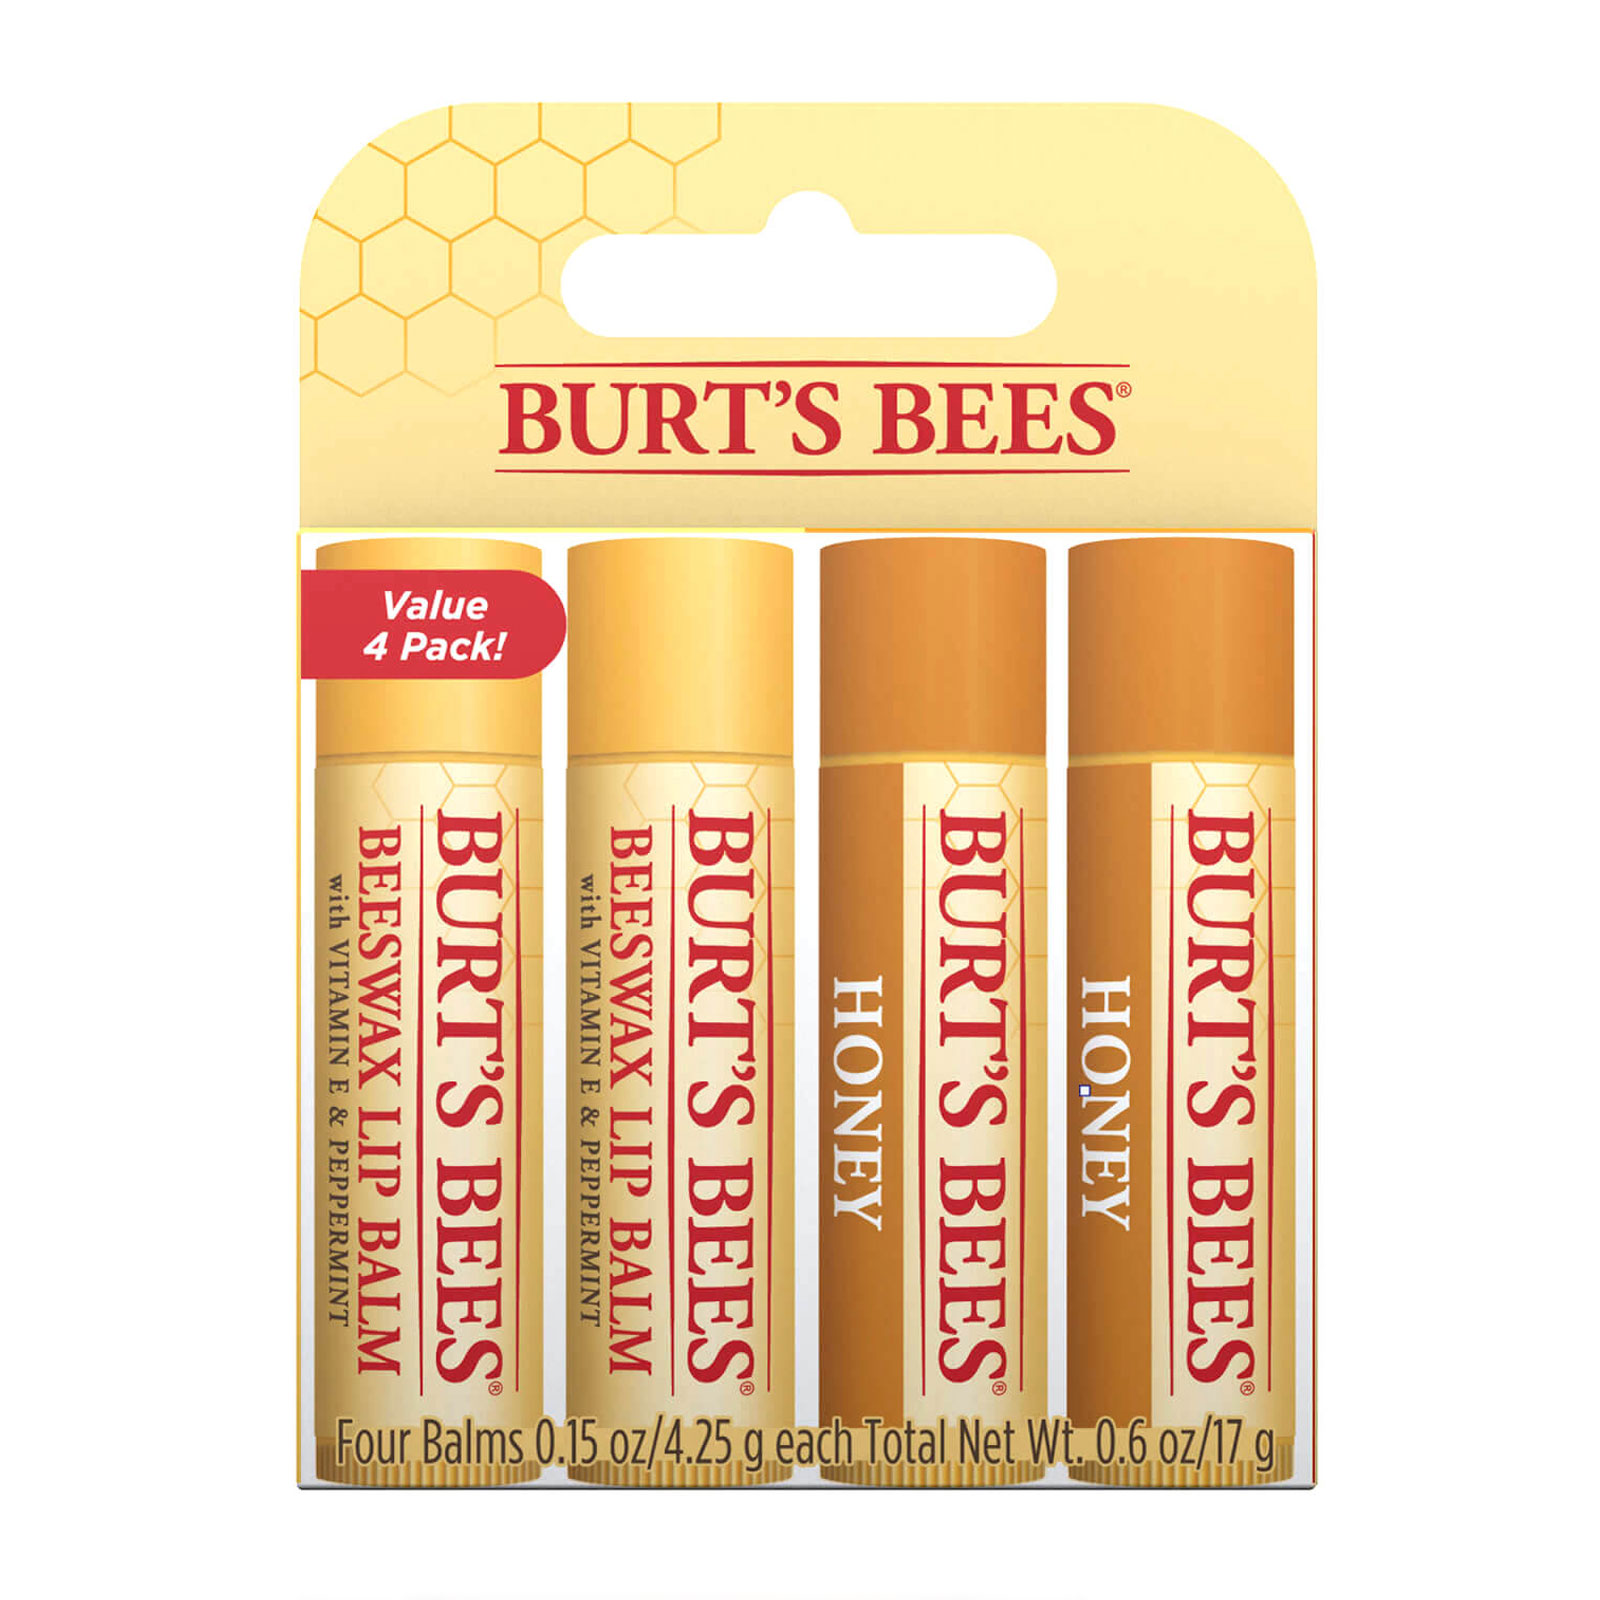 Burt's Bees 小蜜蜂 蜂蜡润唇膏2支+蜂蜜润唇膏2支套装 4x4 25g